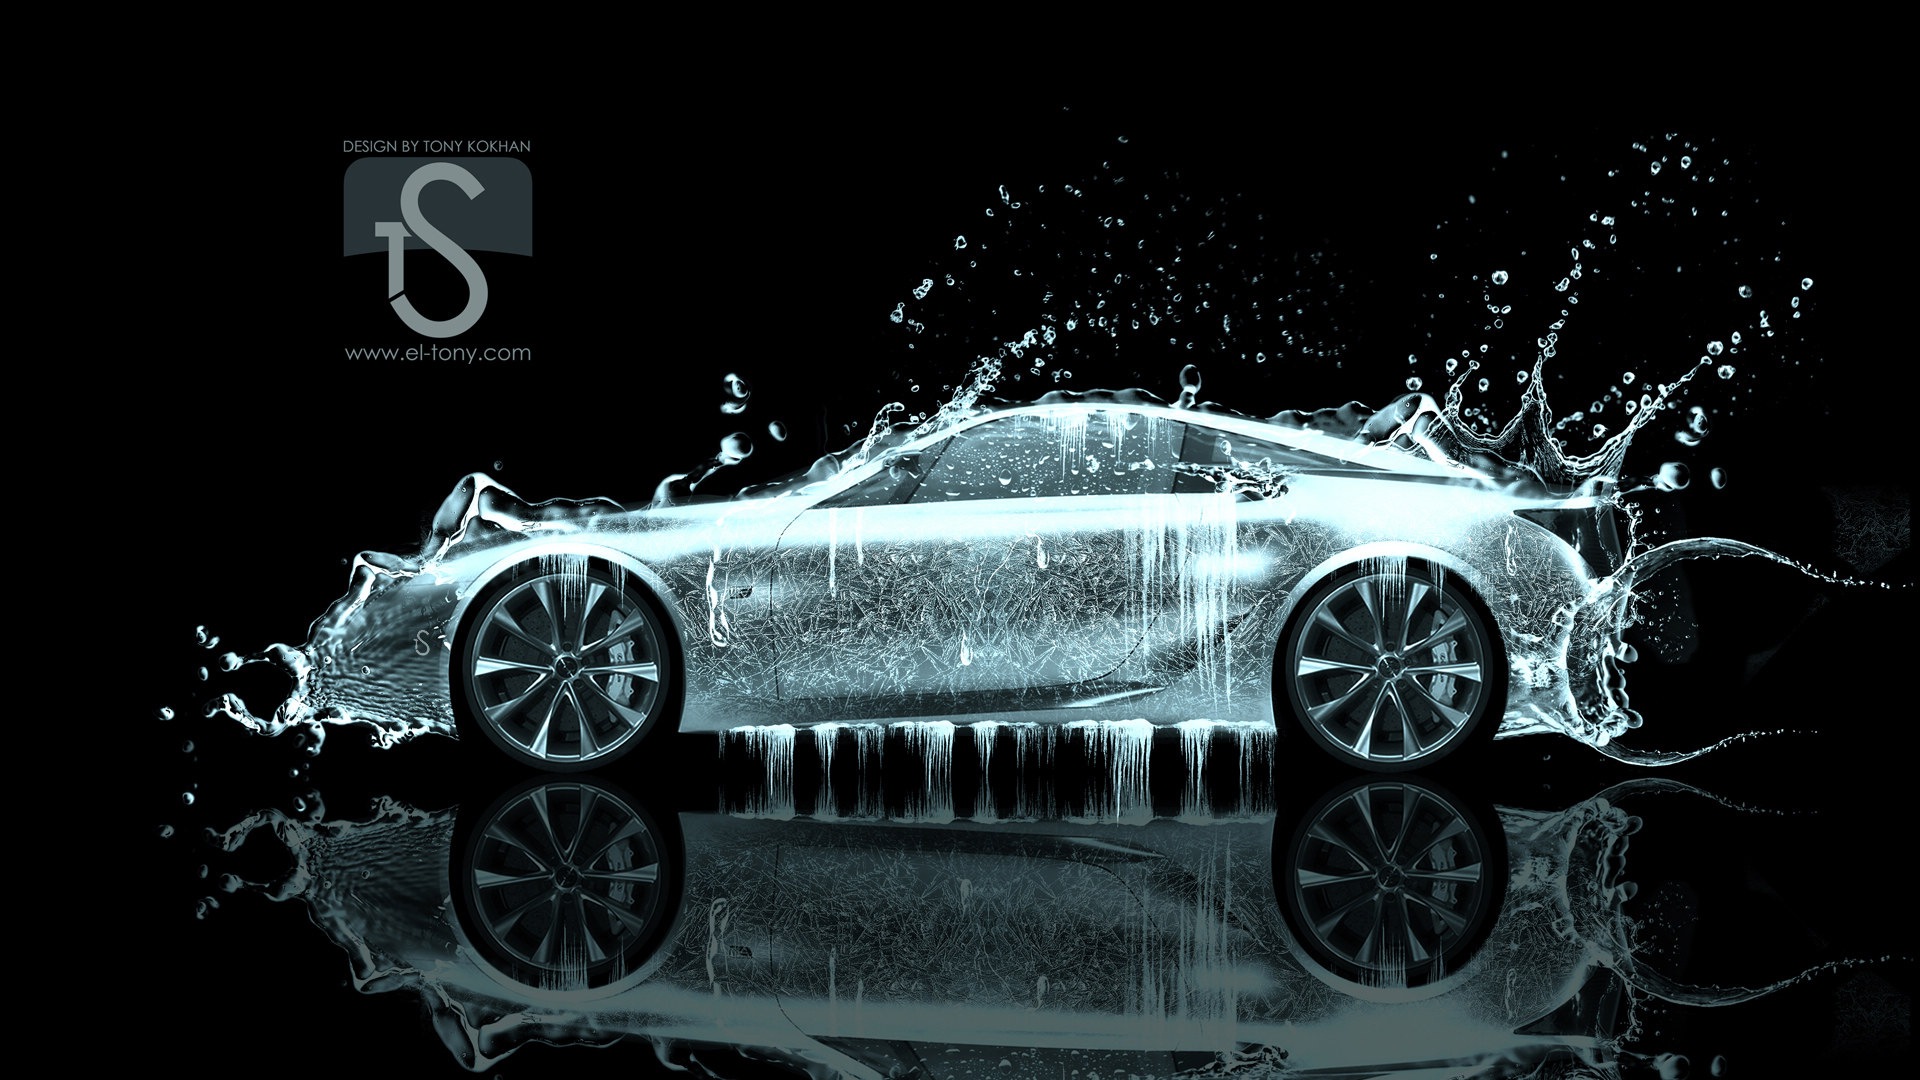 Les gouttes d'eau splash, beau fond d'écran de conception créative de voiture #26 - 1920x1080